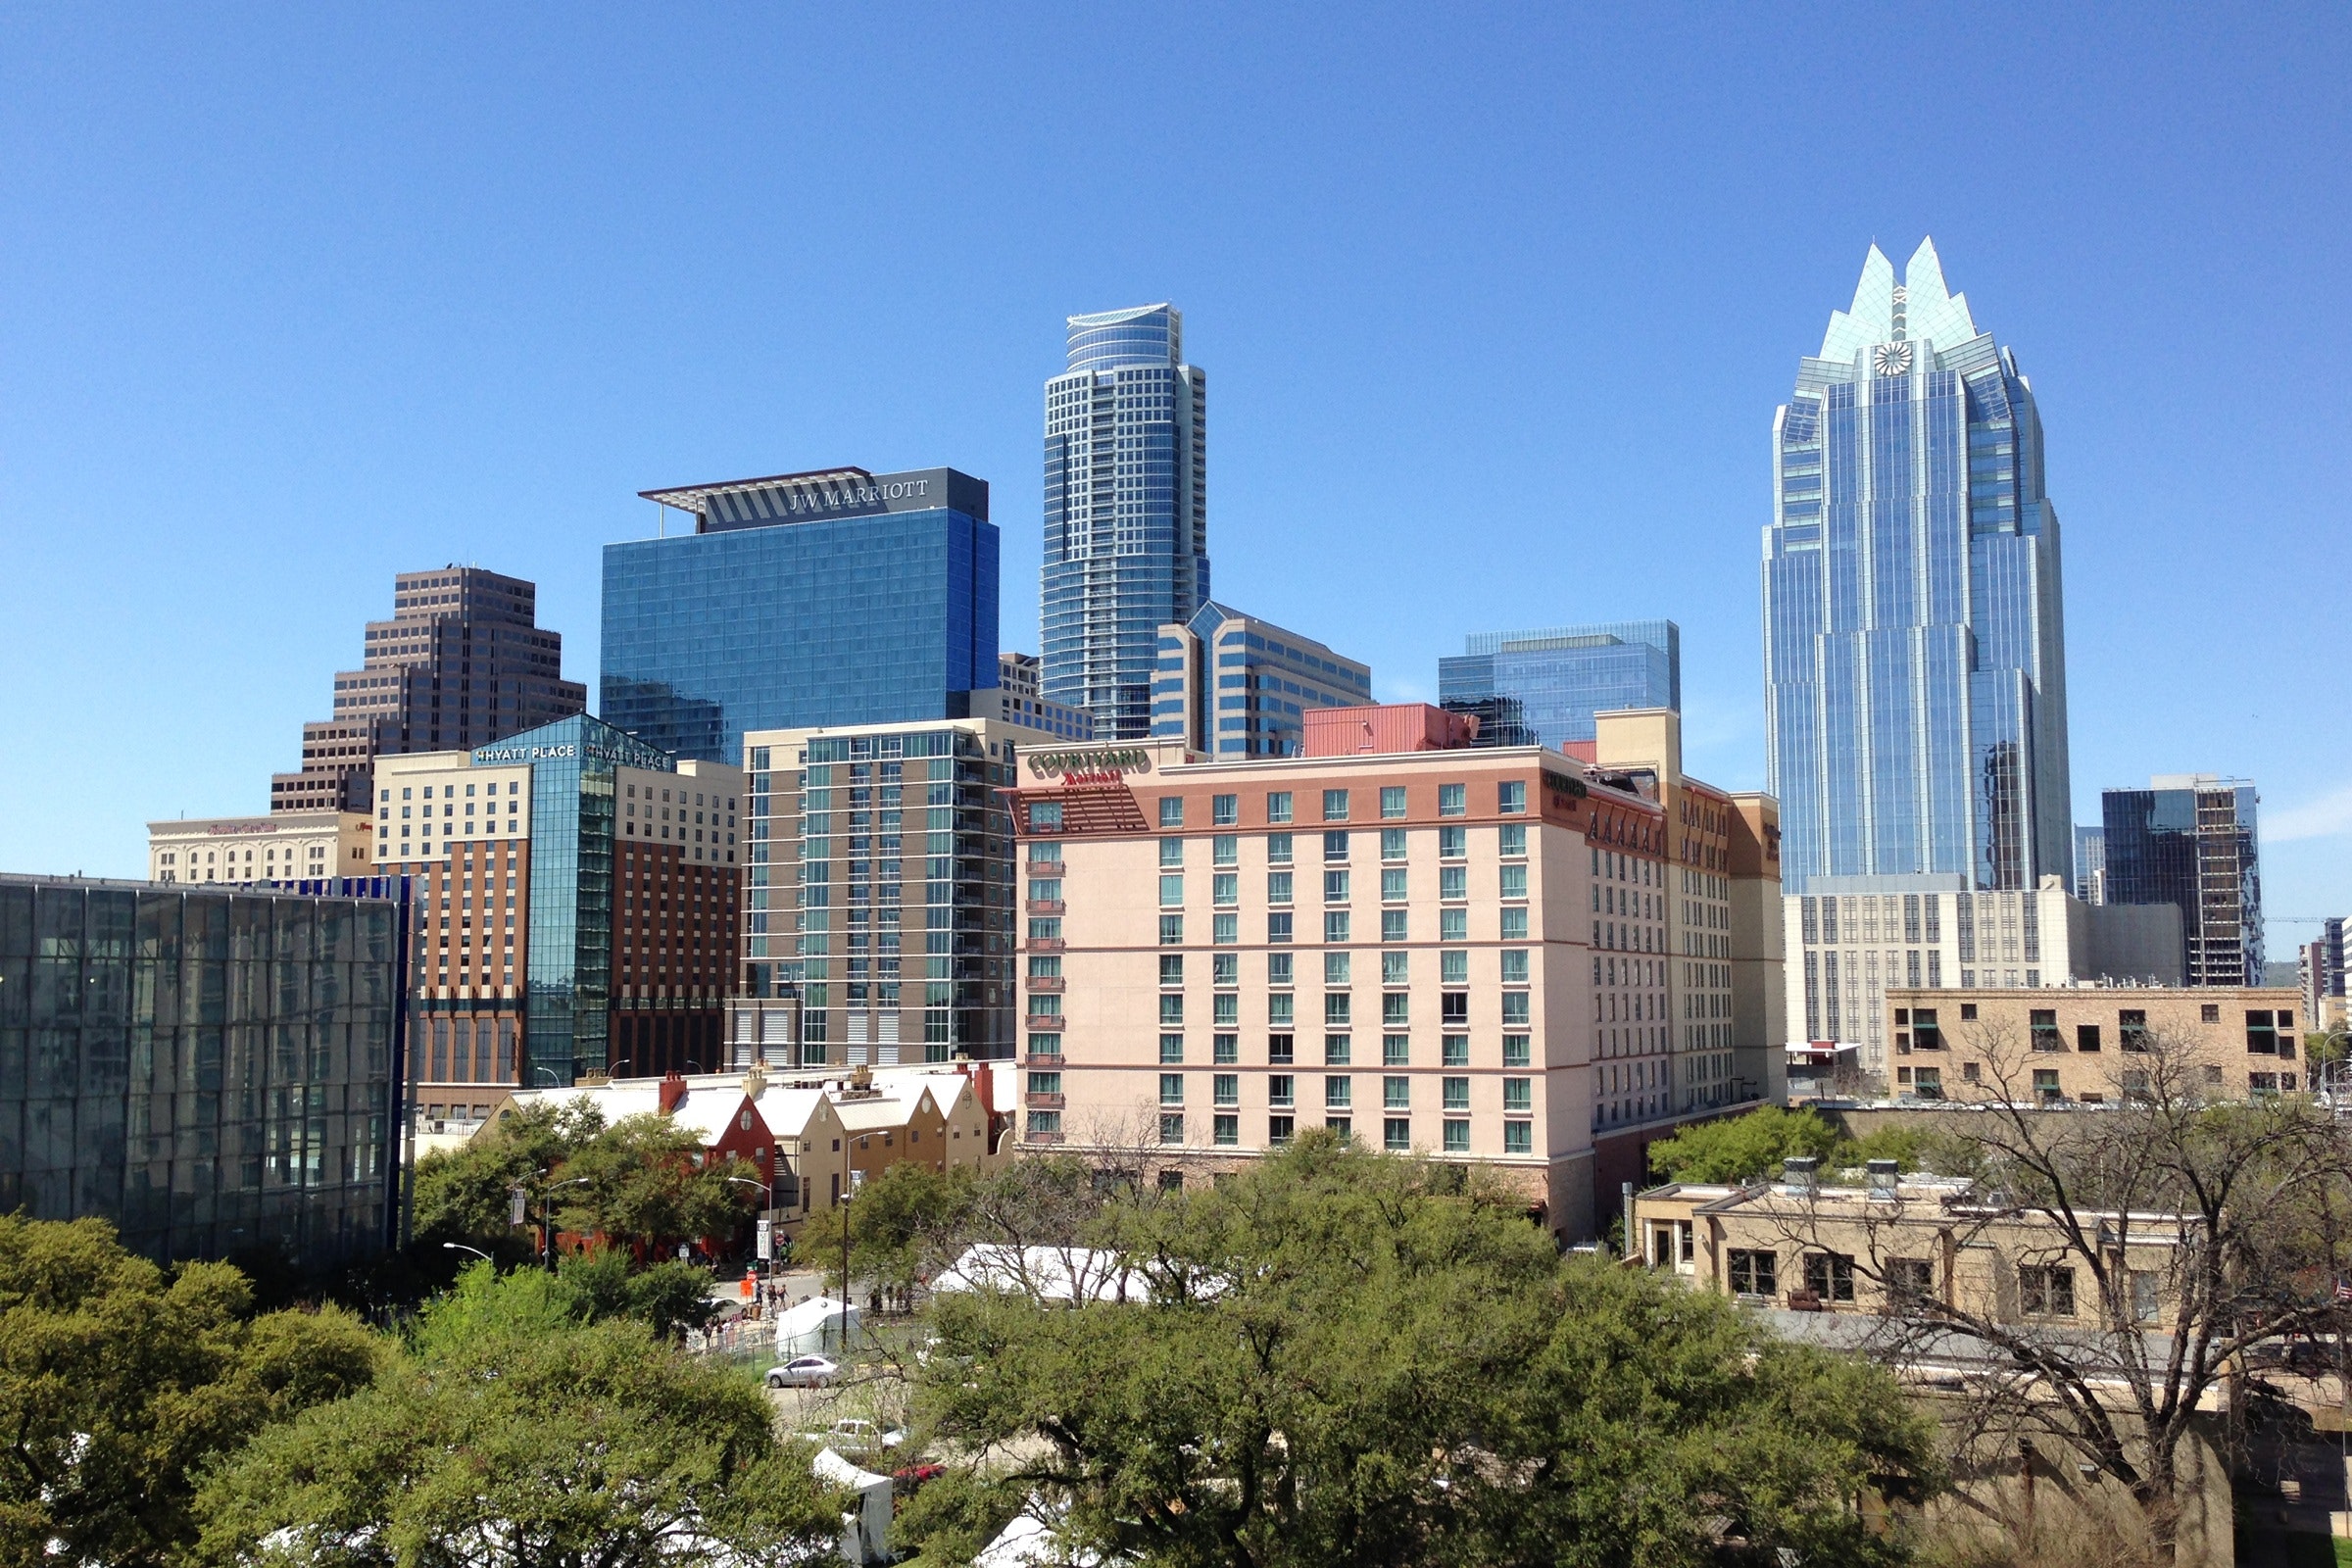 Austin, Texas skyline on a clear blue sky day.